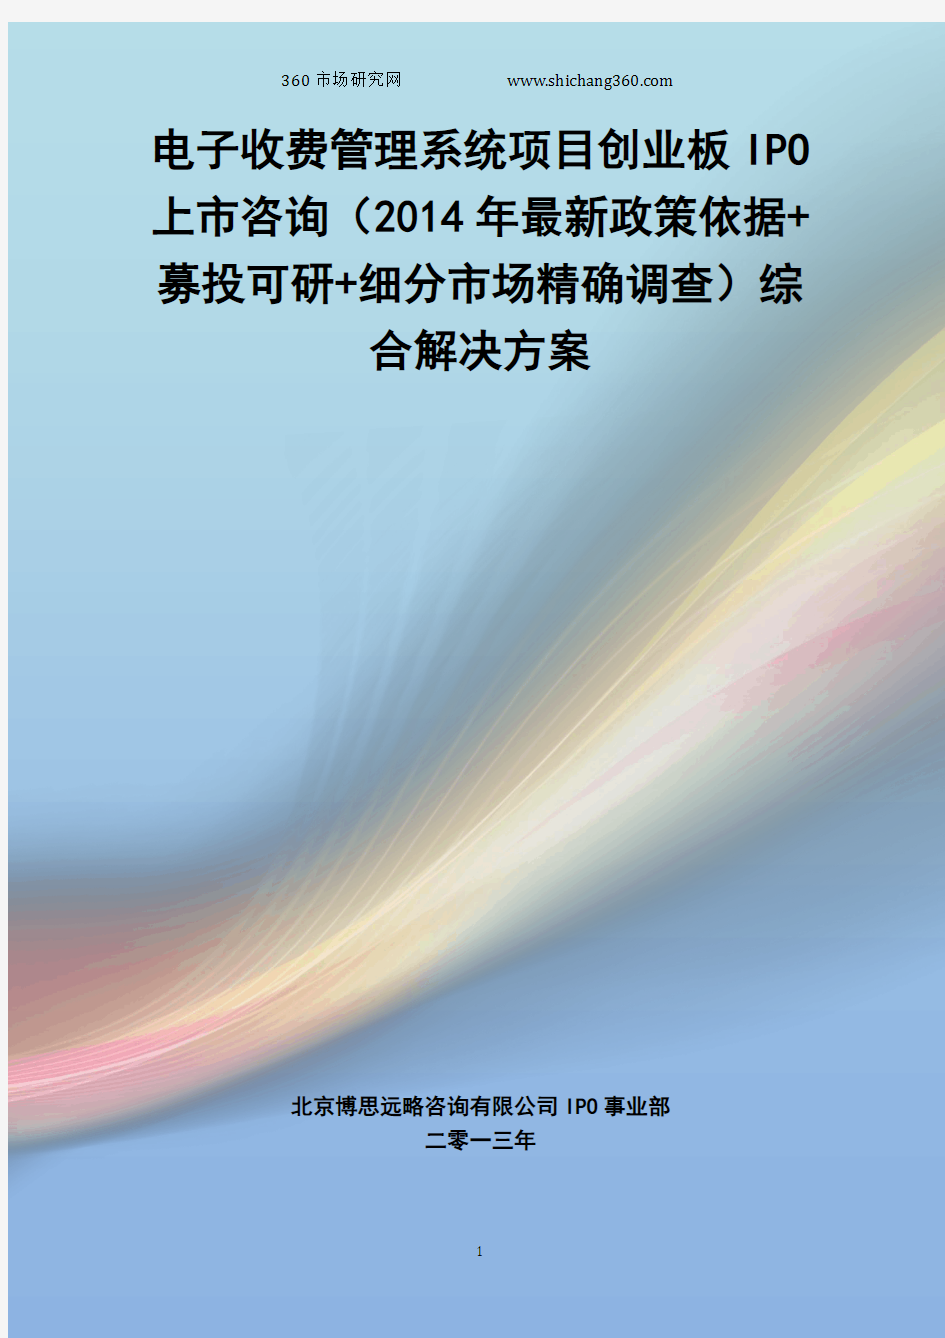 电子收费管理系统IPO上市咨询(2014年最新政策+募投可研+细分市场调查)综合解决方案